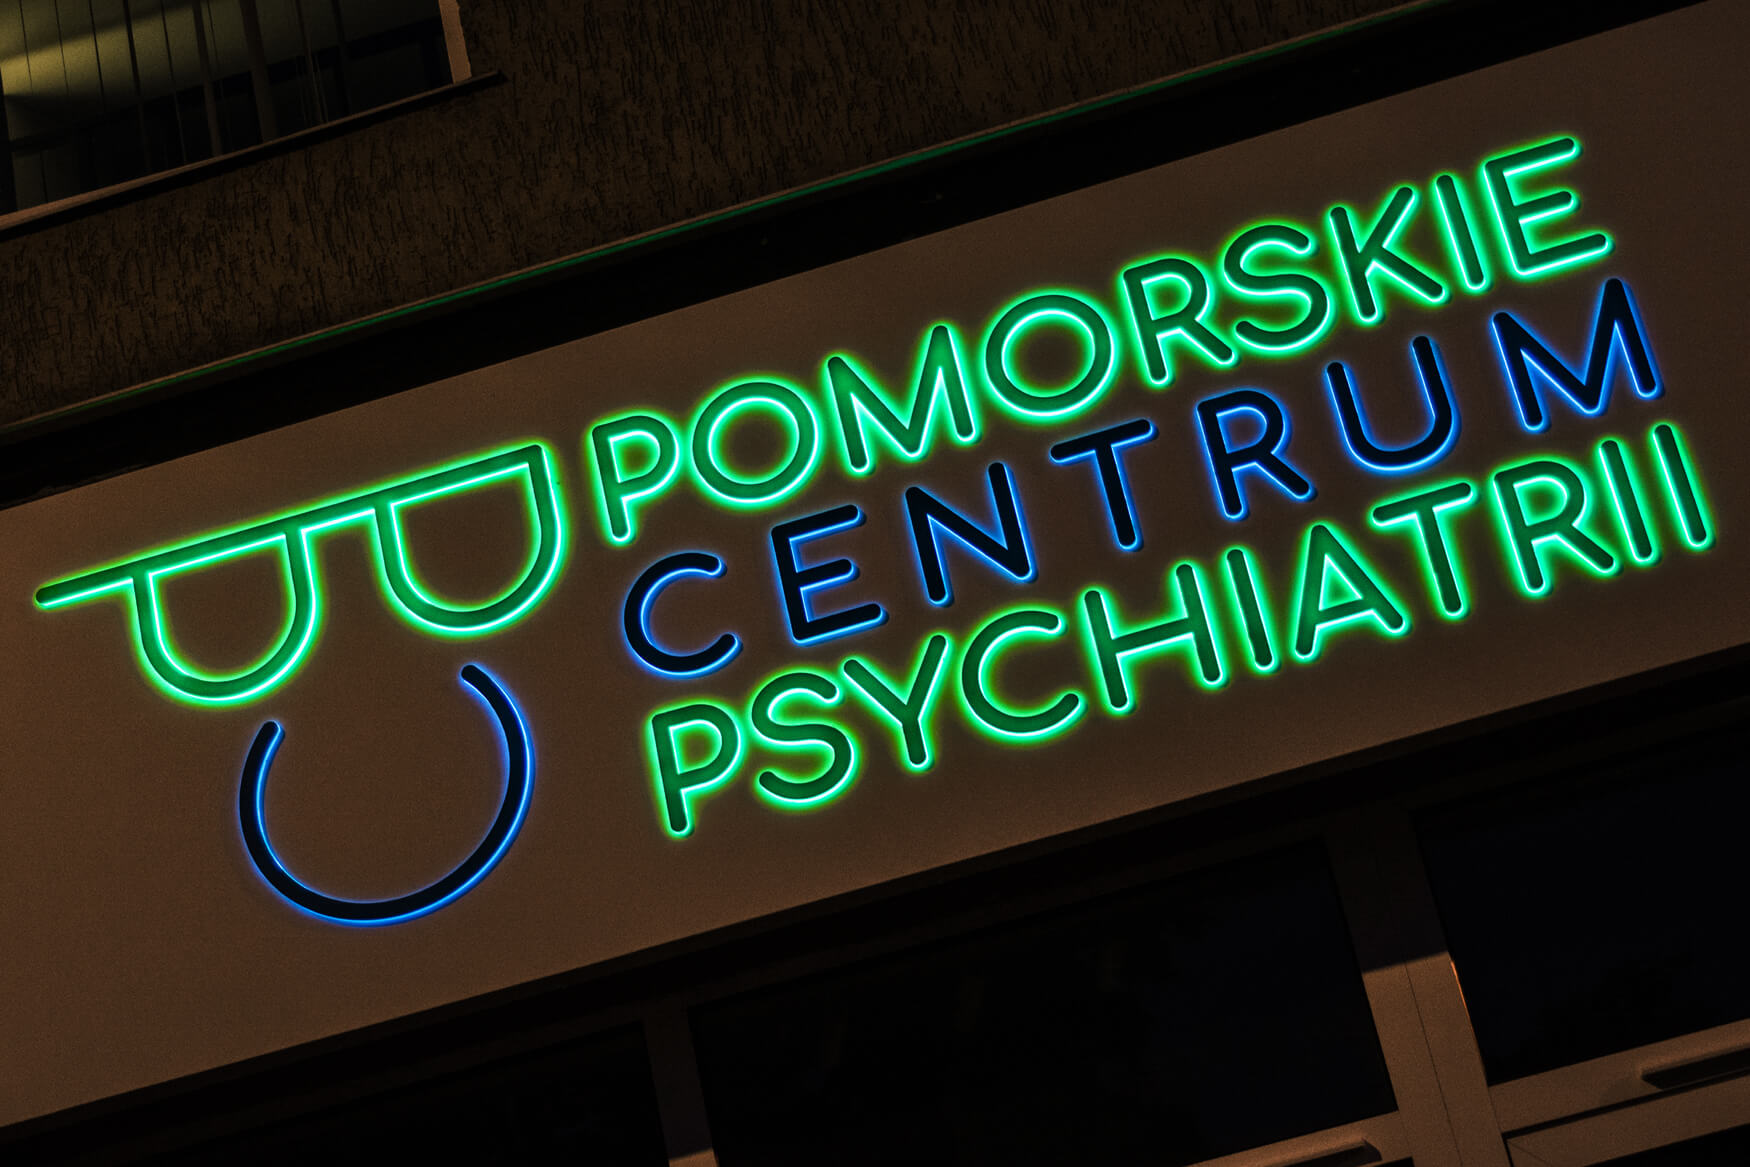 centro pomeraniano di psichiatria - Centro psichiatrico di Pomerania - pannello pubblicitario in dibond posto sopra l'ingresso